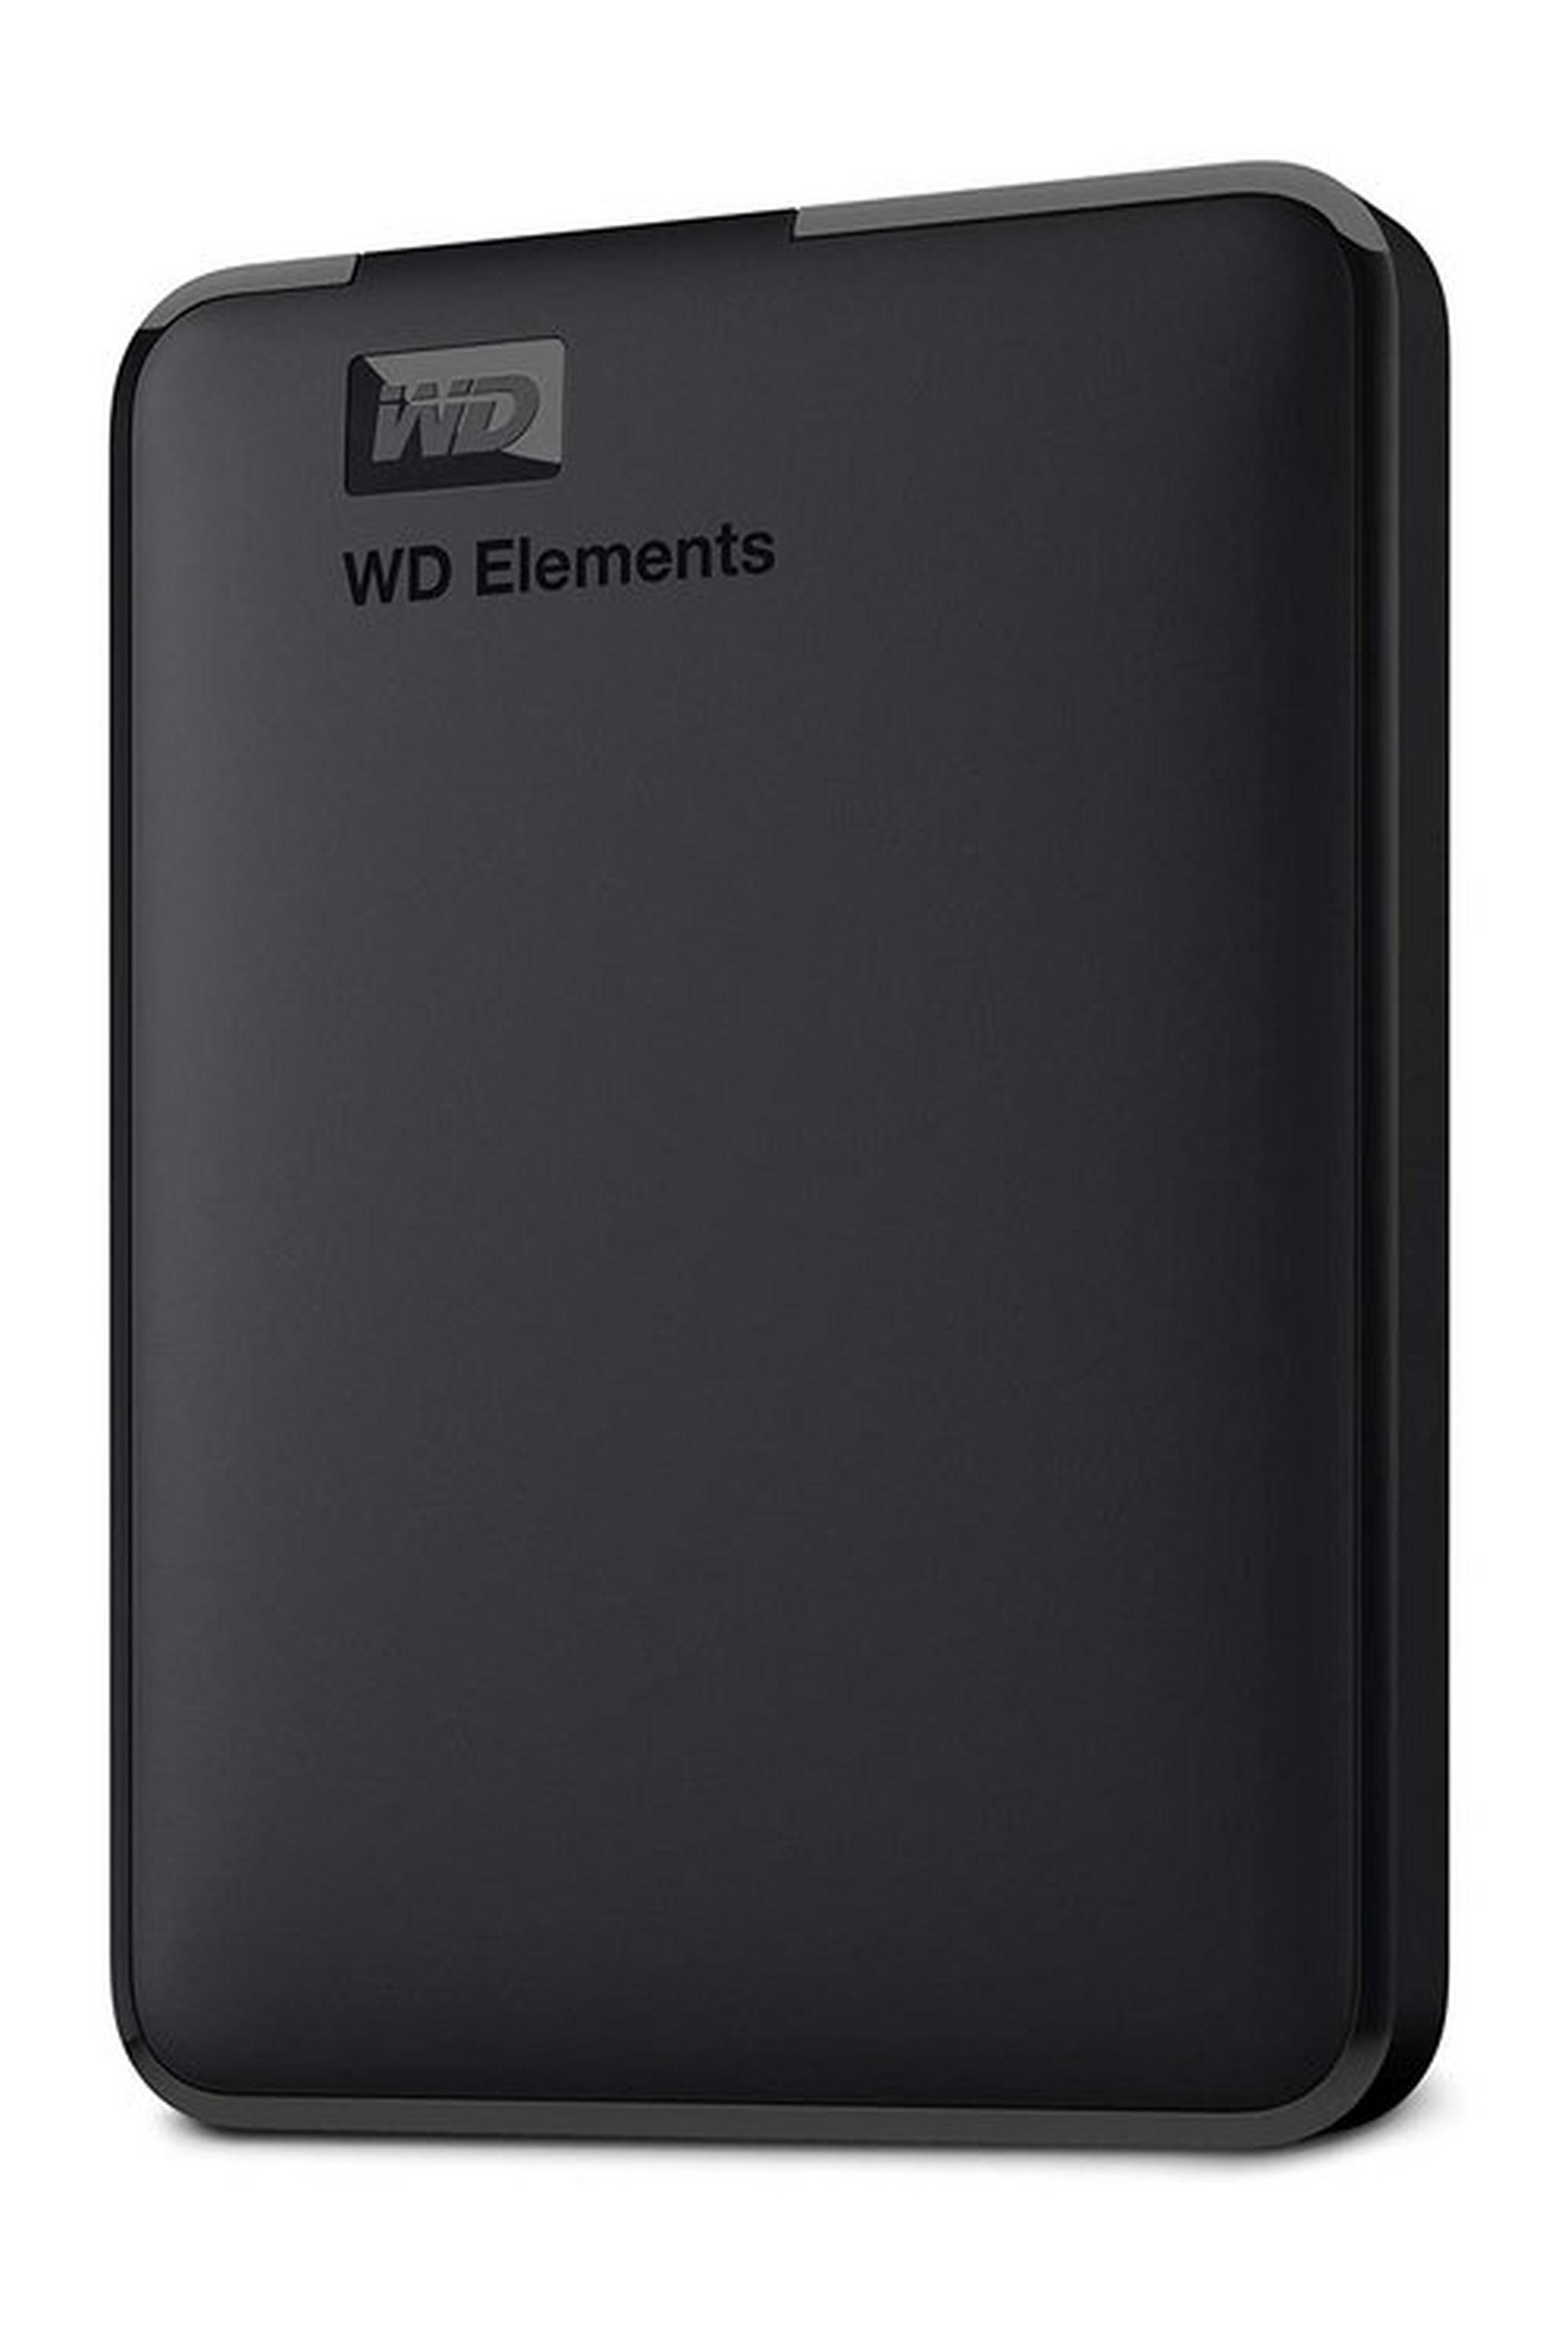 Western Digital 5TB Element Portable Hard Drive - (WDBU6Y0050BBK)